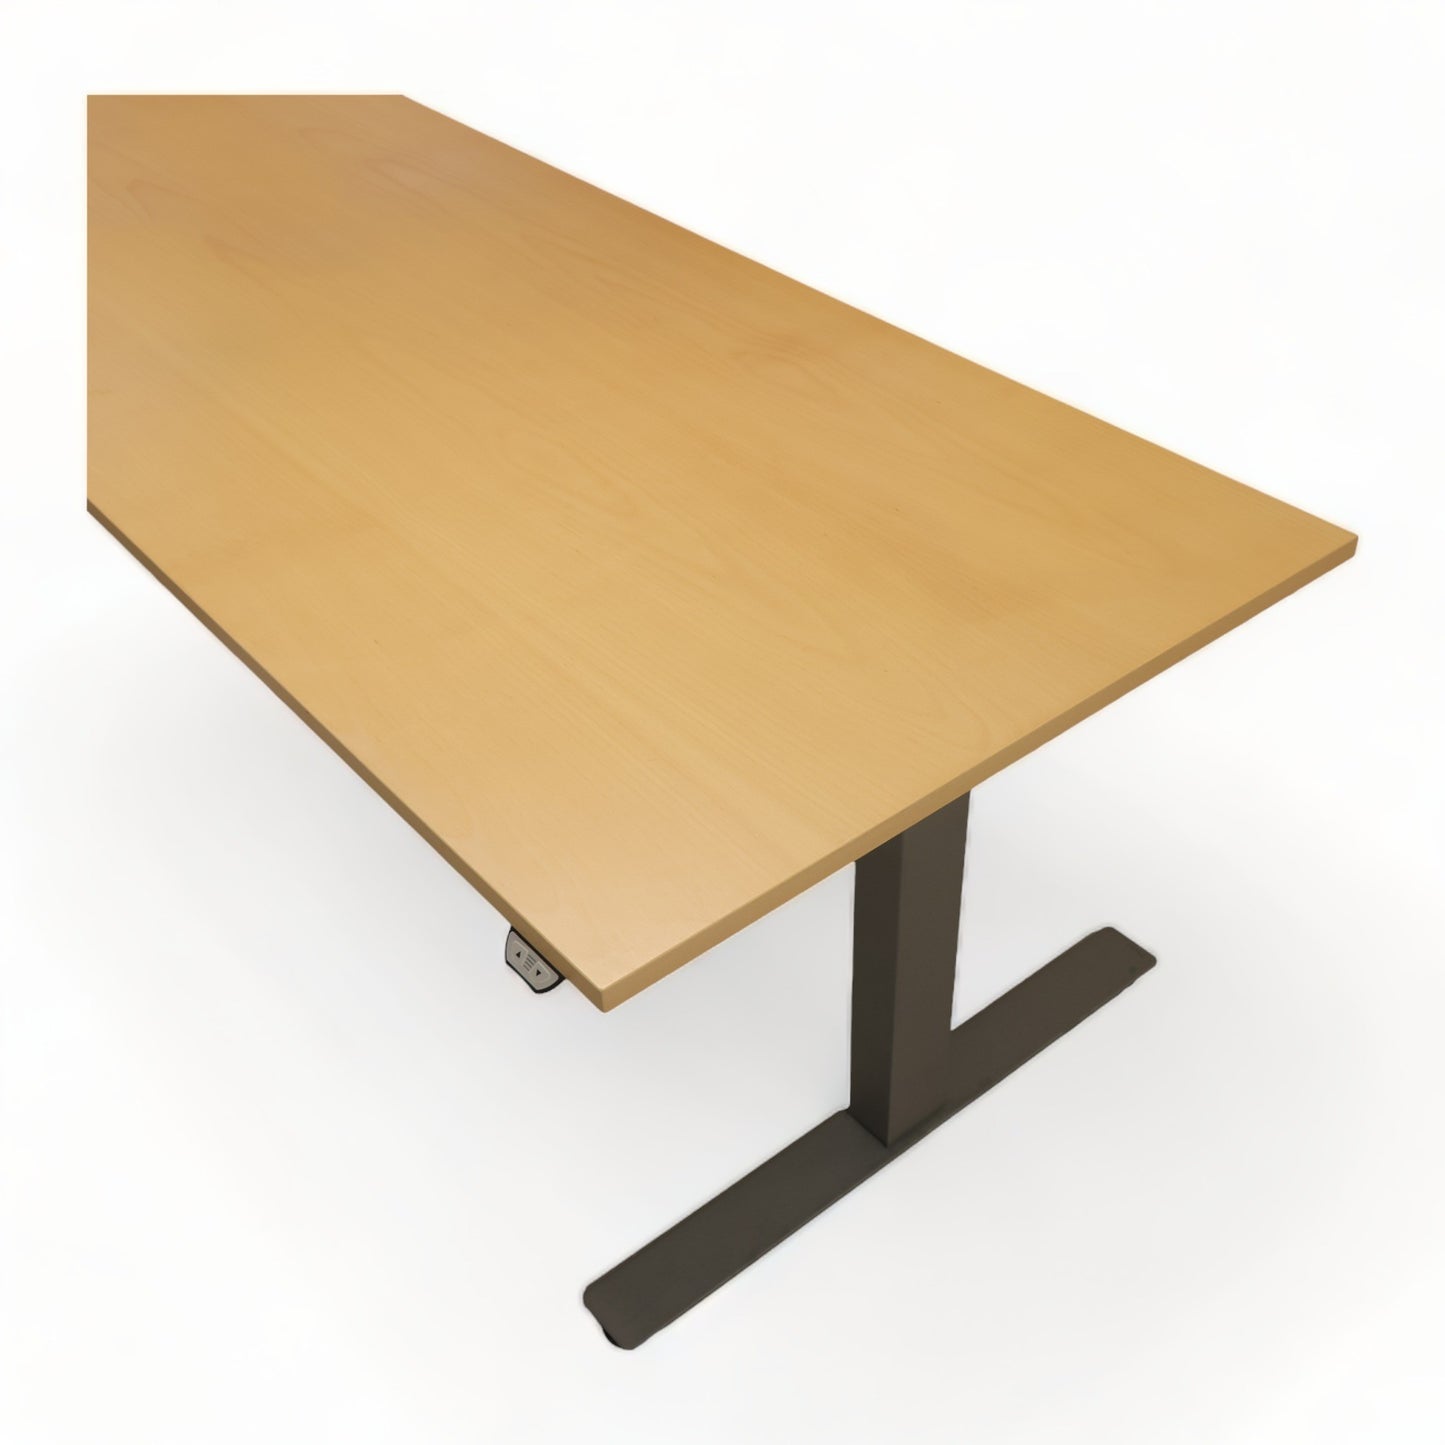 Kvalitetsikret | 200×120, elektrisk hev/senk bord med sving